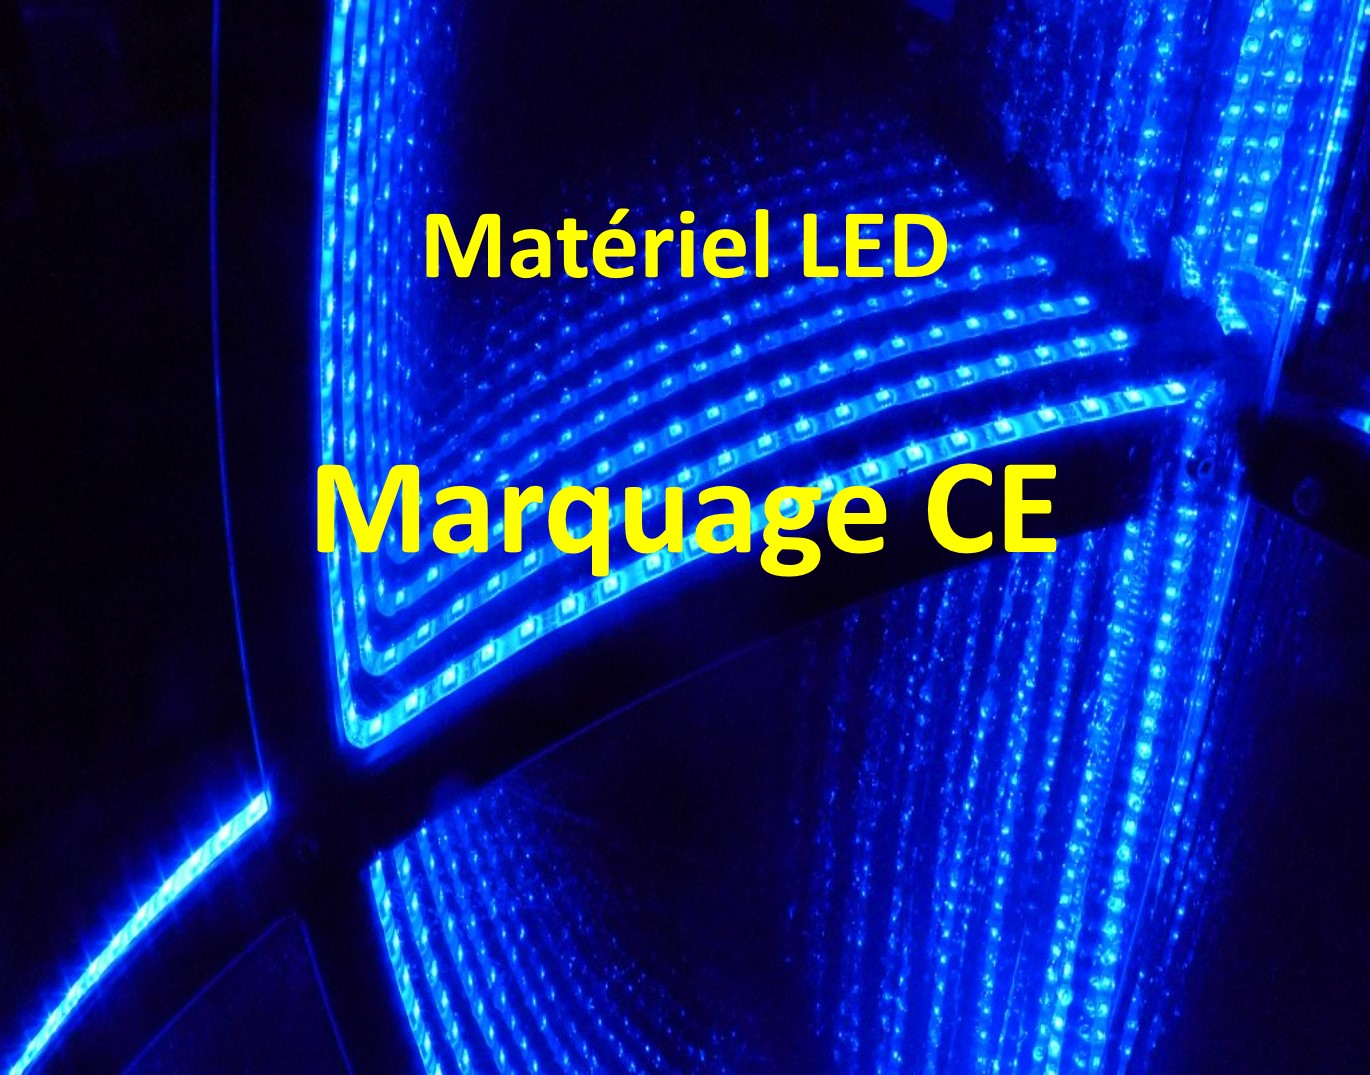 Matériel LED Marquage CE - S'équiper d'un matériel LED - Démarches nécessaires - Conseils pratiques